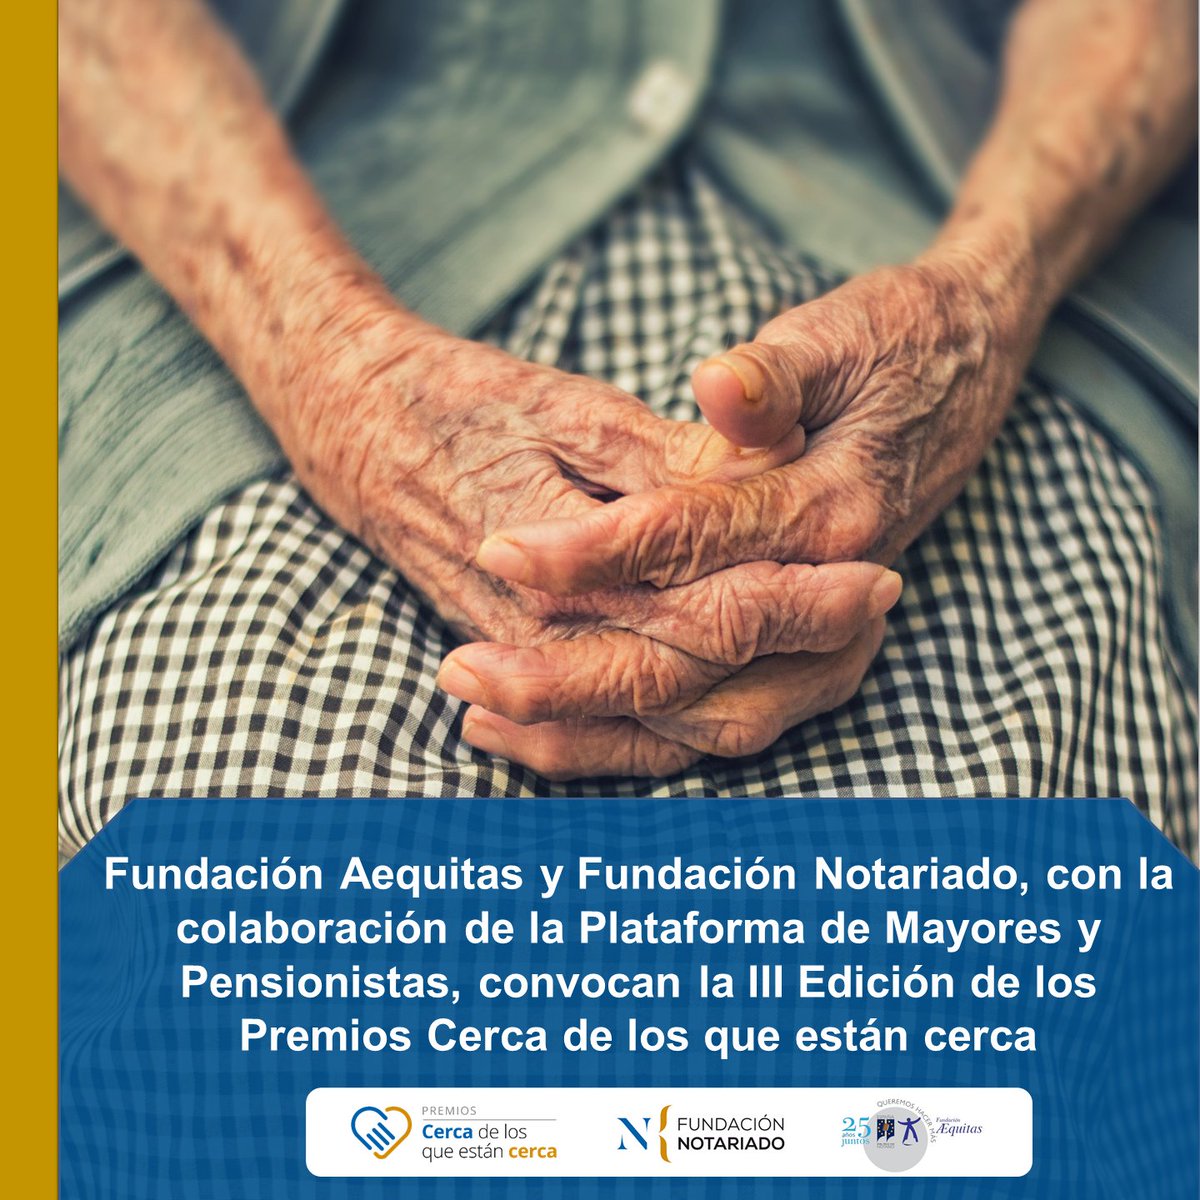 En pueblos, en ciudades… en toda España hay centros de #mayores, de #jubilados, asociaciones, entidades sin ánimo de lucro con miles de proyectos de apoyo a las personas mayores 🤝 ¡Esperamos tu candidatura! fundacionnotariado.org/portal/documen… @FAEQUITAS @PlataformaPMP